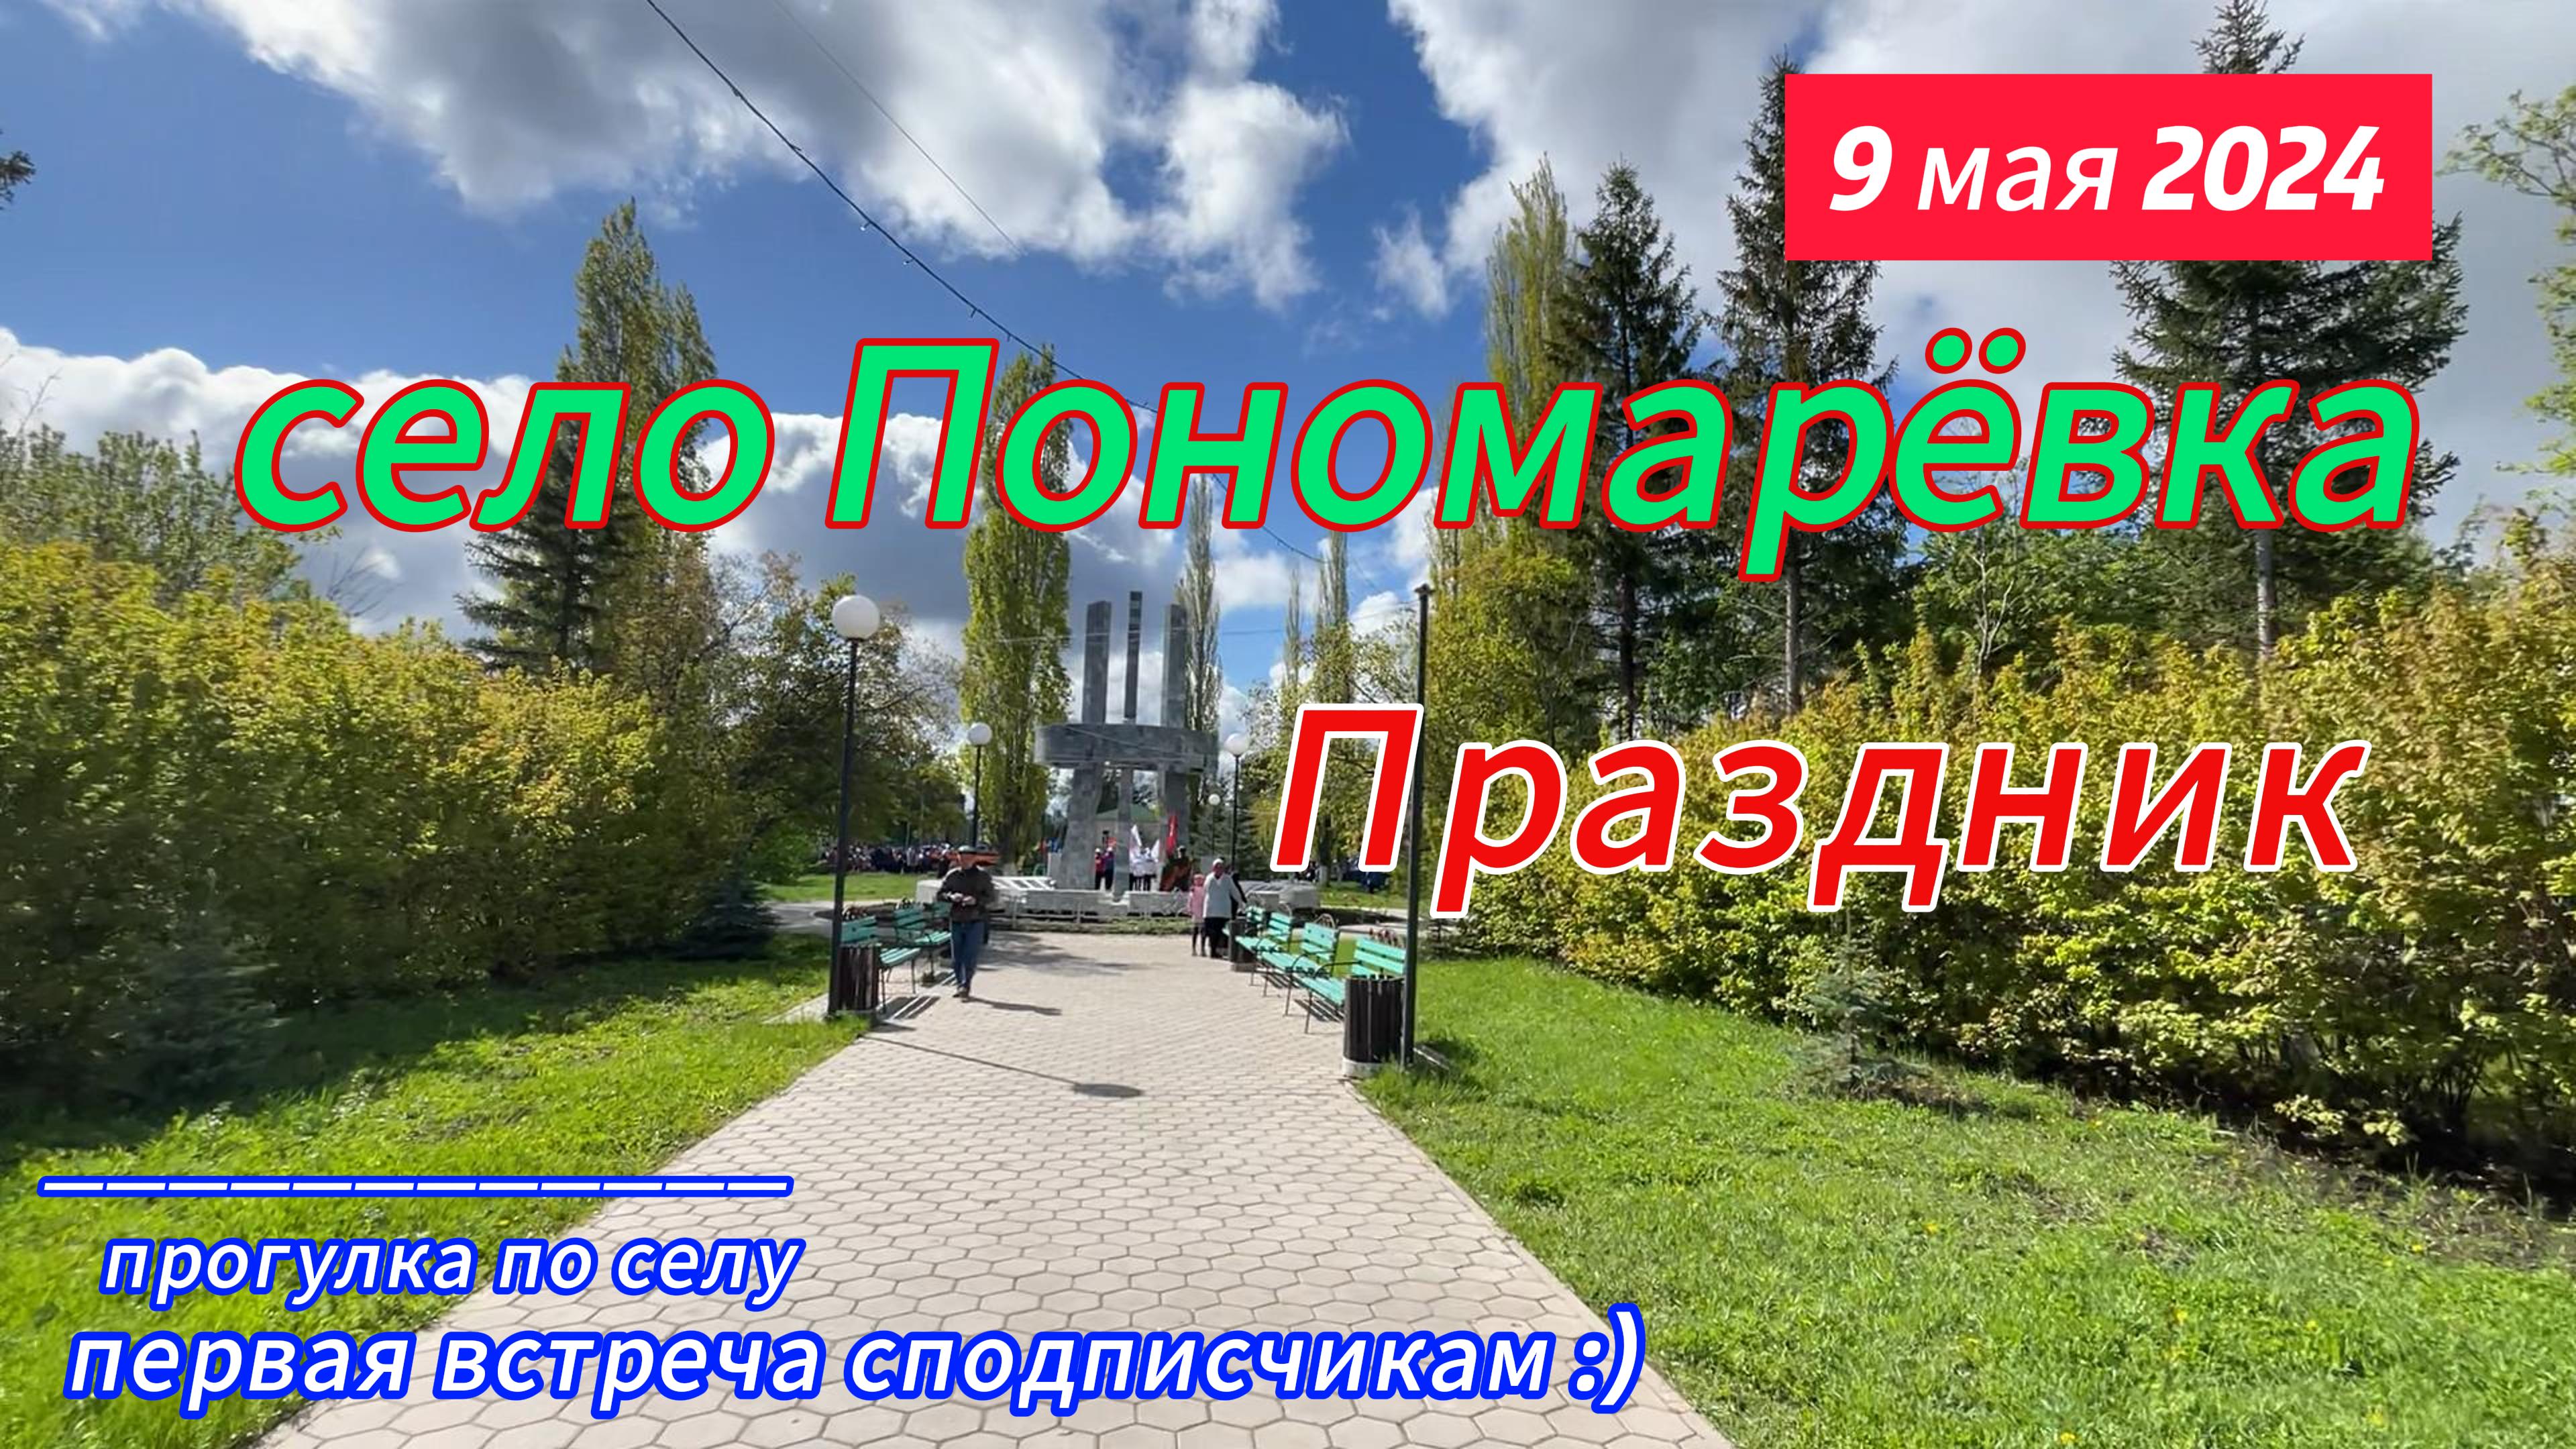 9 мая село Пономаревка, прогулка по селу, встреча с подписчиком